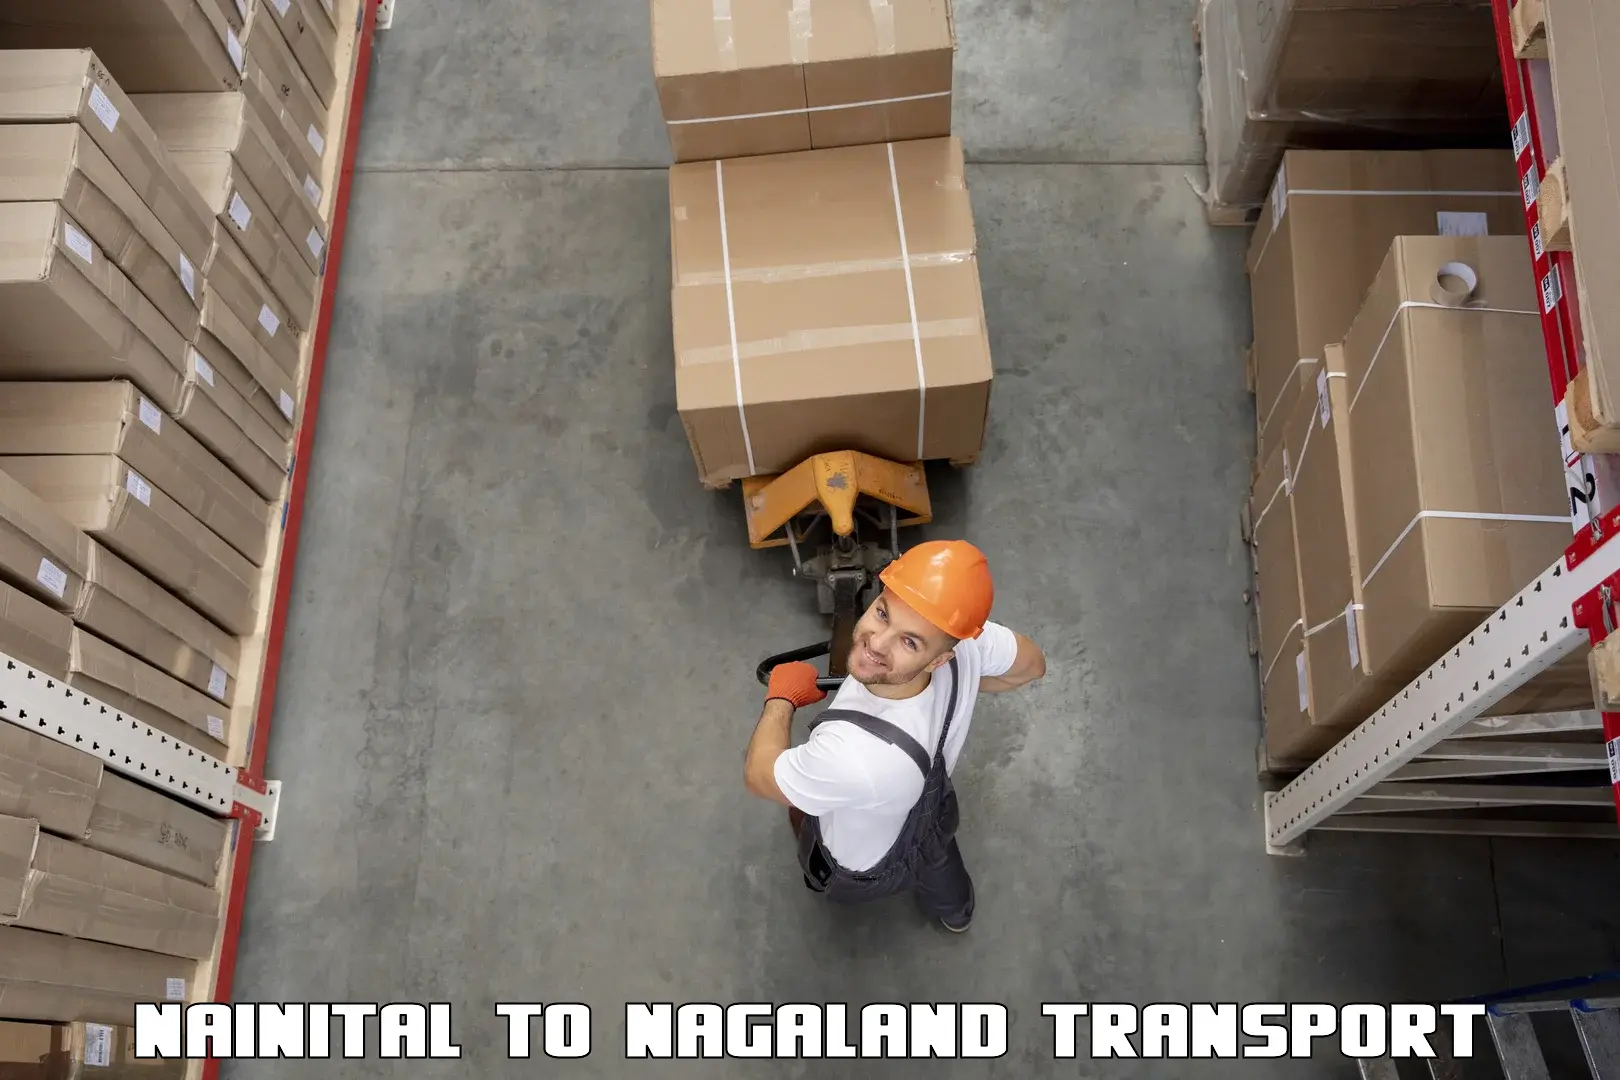 Part load transport service in India Nainital to Nagaland